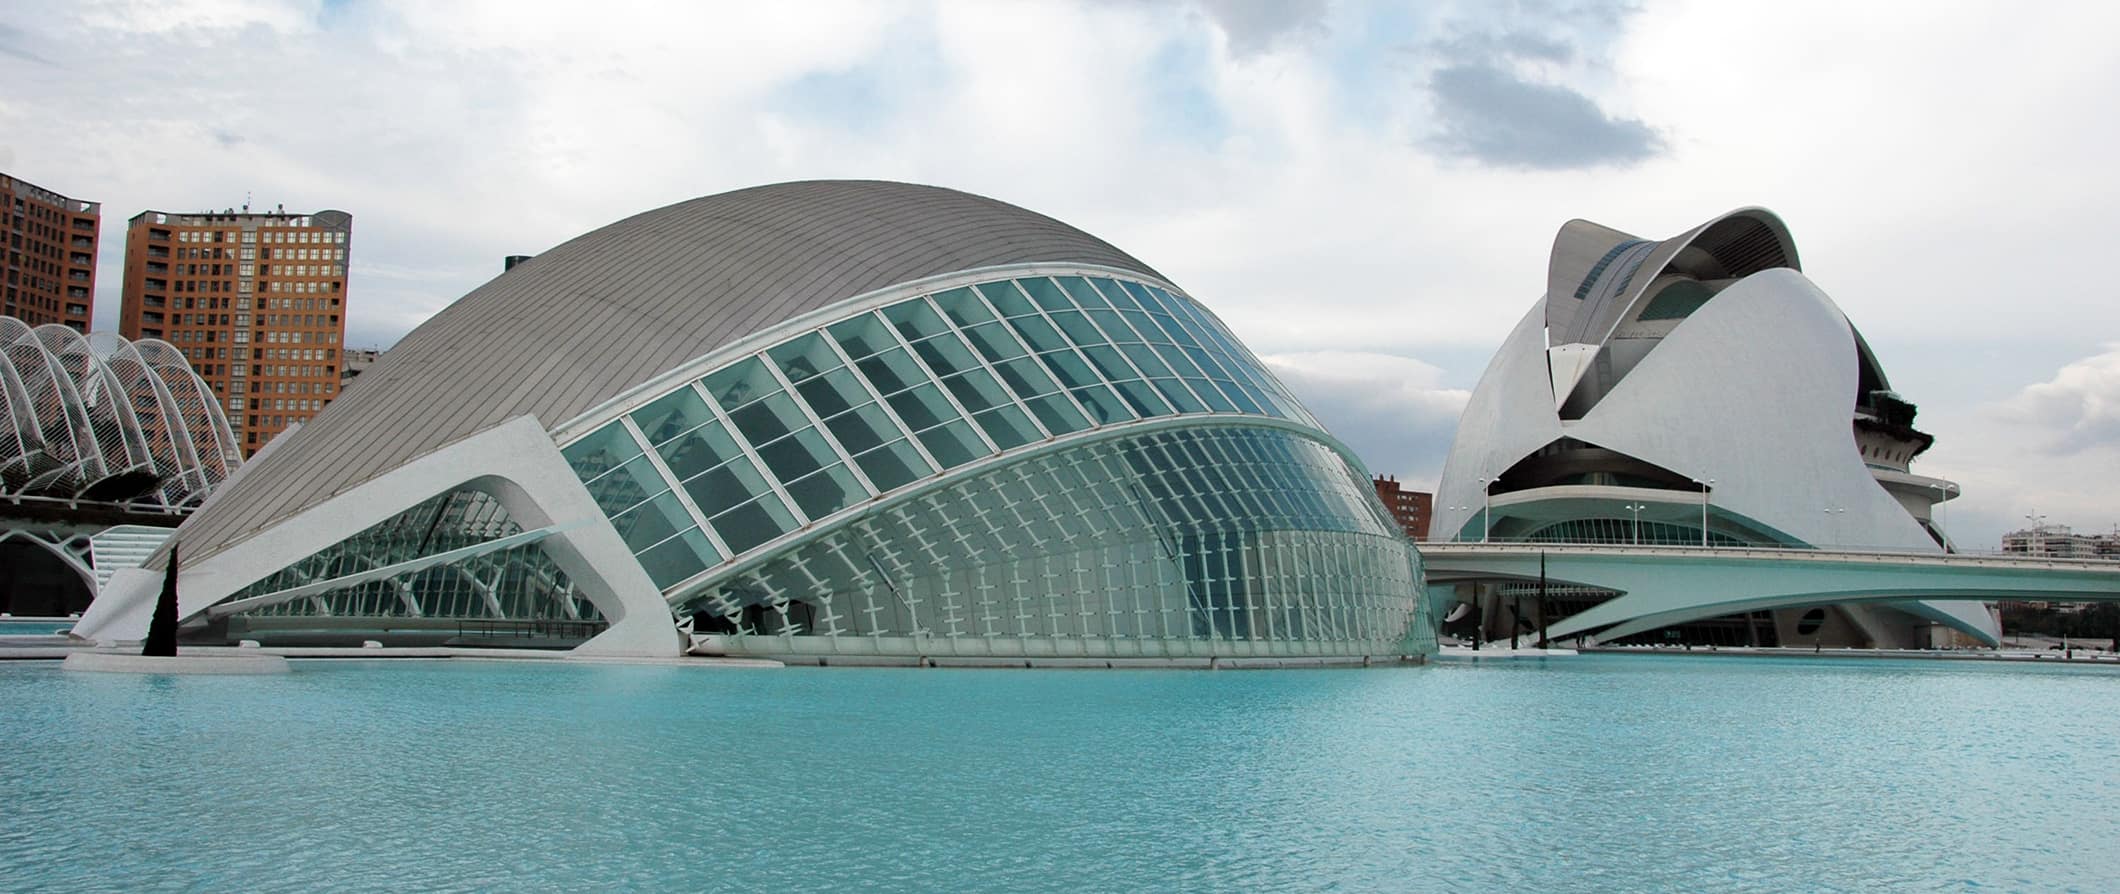 Valencia's modern architecture